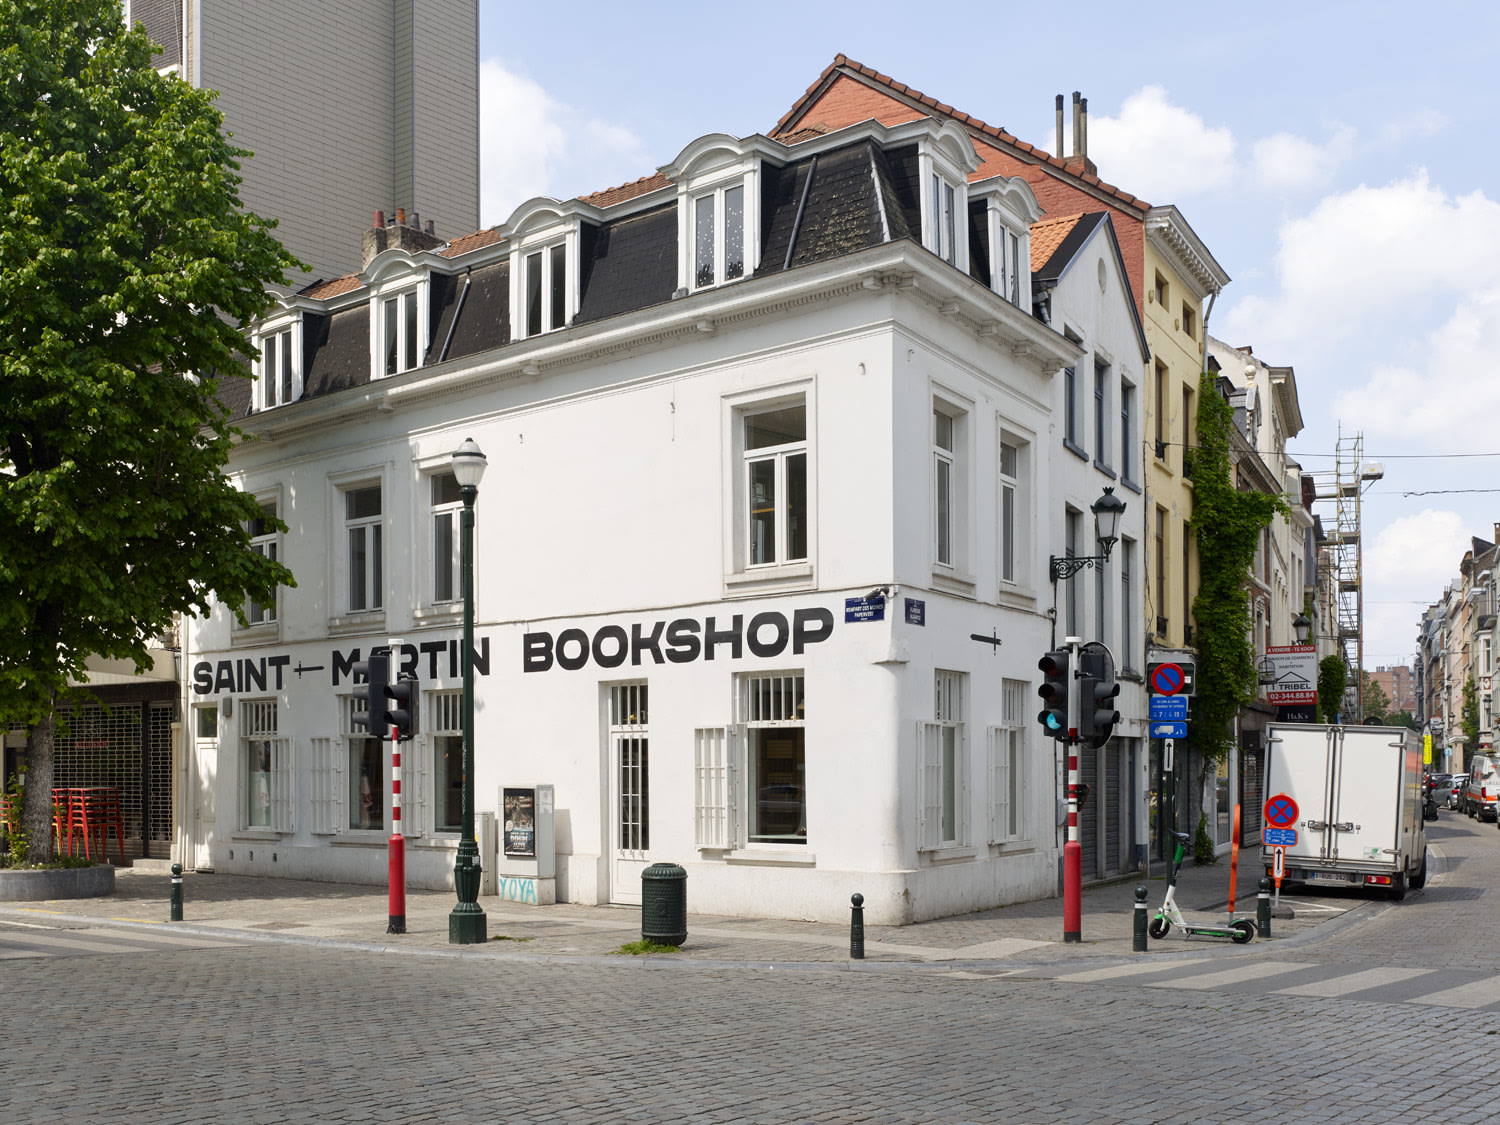 <div class="image_caption_container"><div class="image_caption">Exhibition view: <strong>Offering</strong>, Saint-Martin Bookshop, Brussels, 2021. Photo © Kristien Daem</div></div>